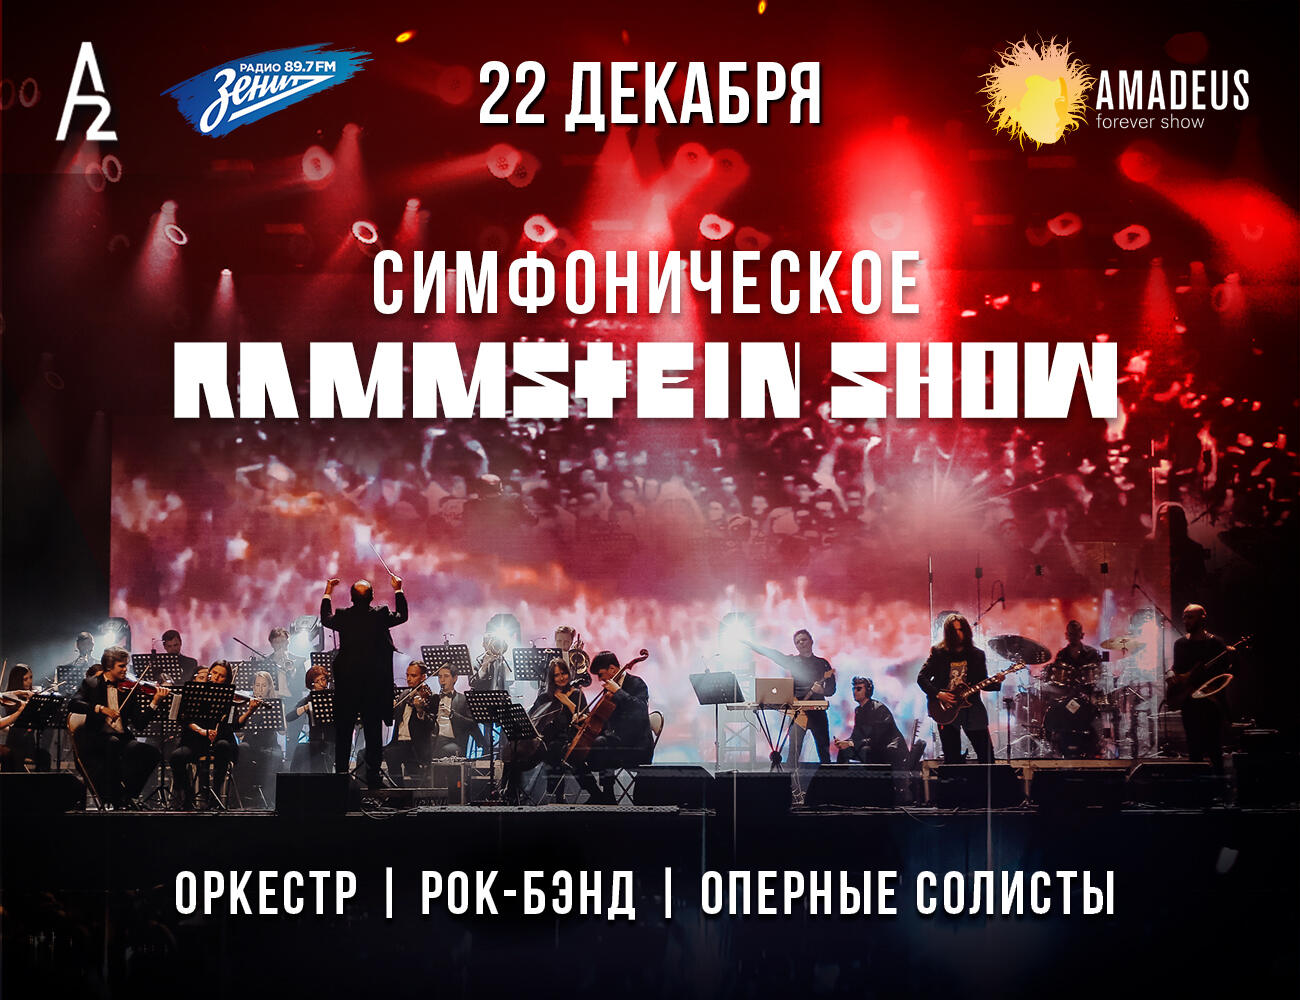 Симфоническое Rammstein-шоу